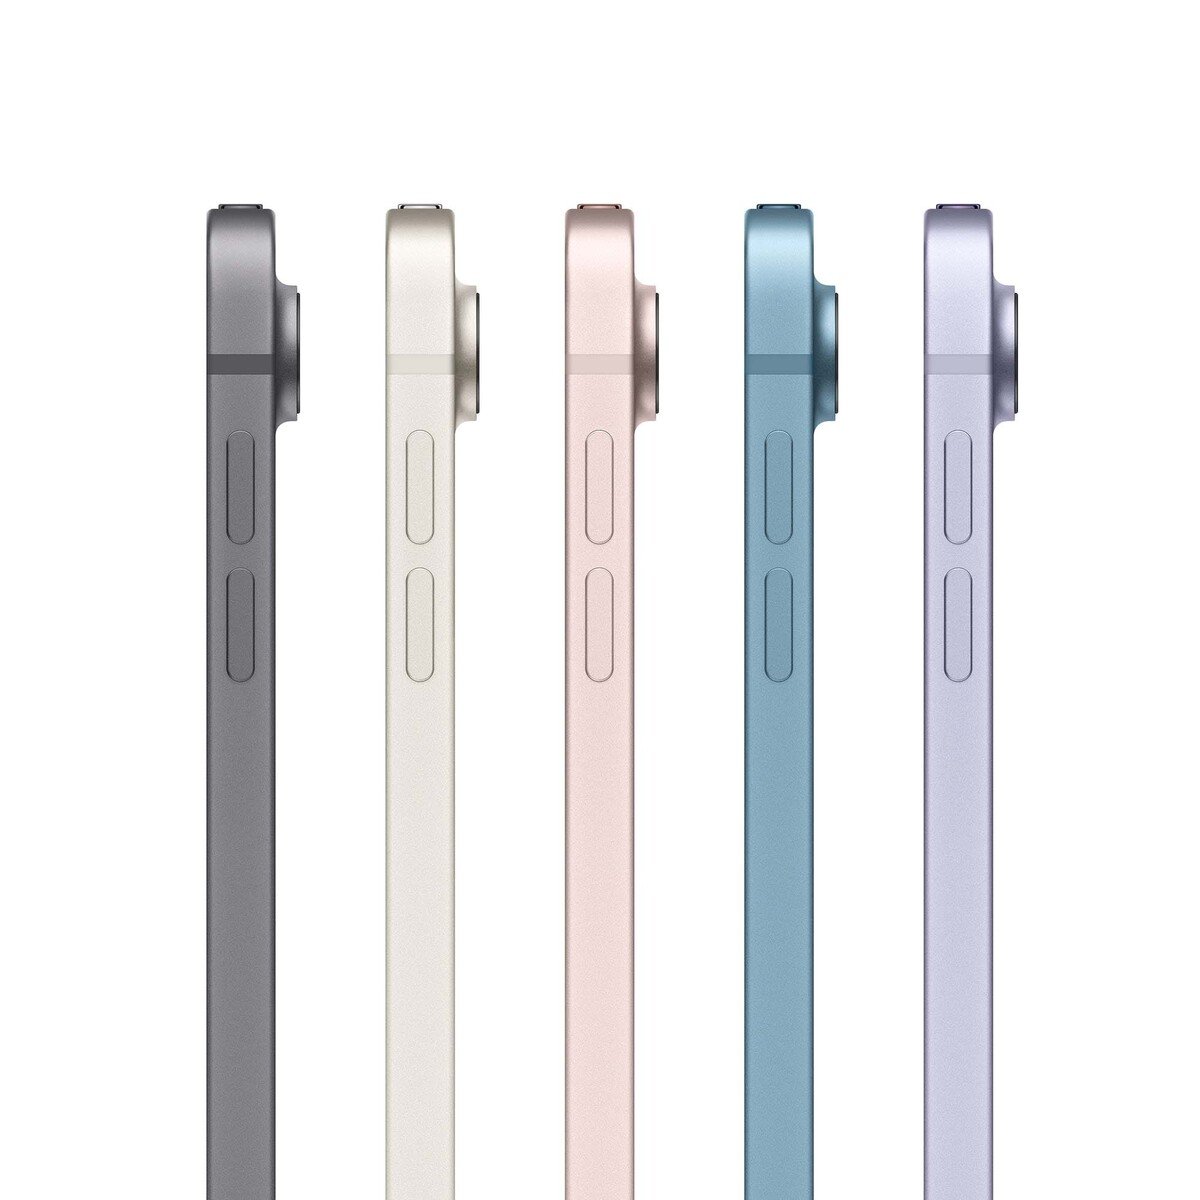 Apple iPad Air (2022) 10.9-inchch Wi-Fi + Cellular(5G) 64GB Space Gray